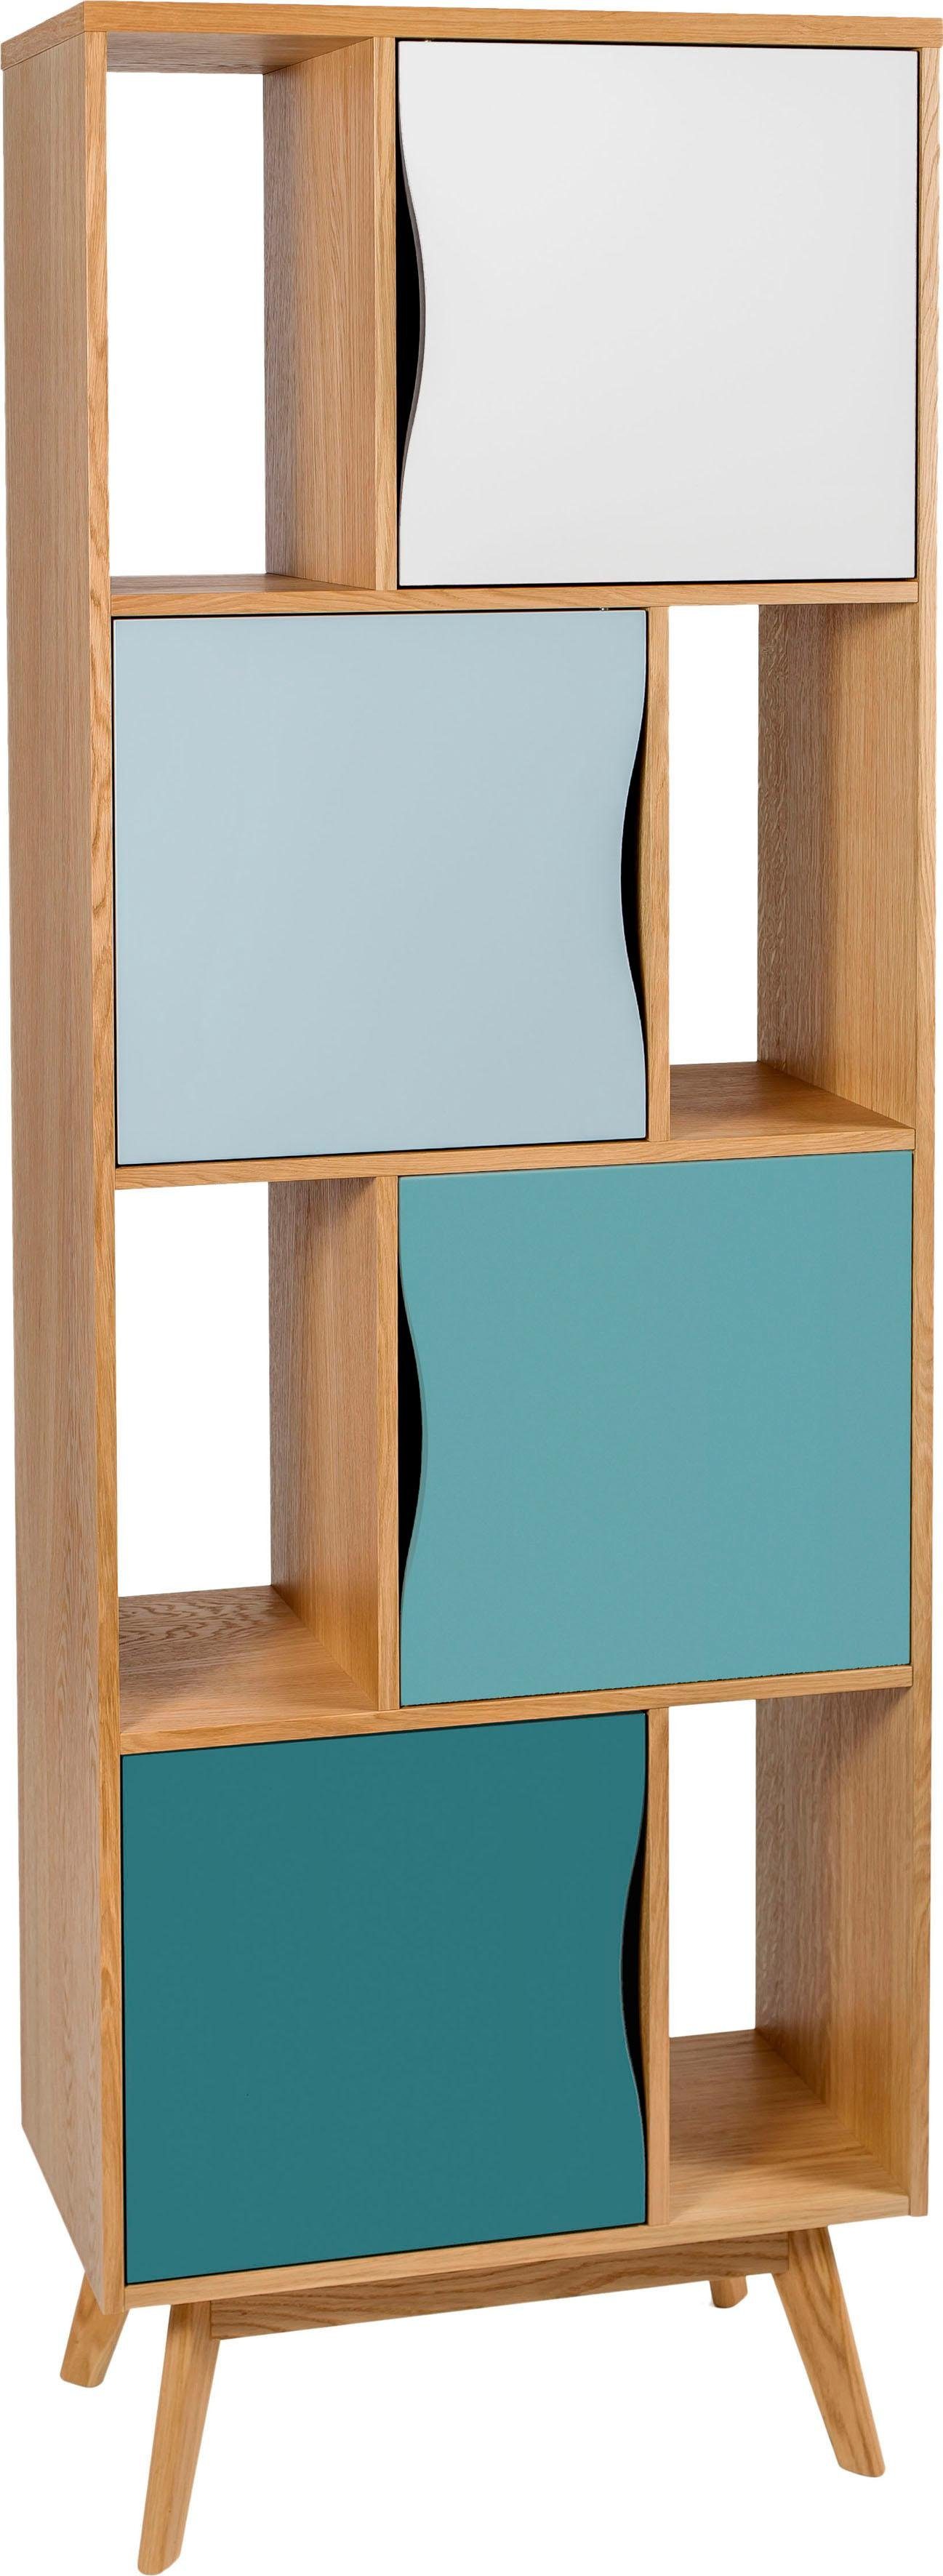 Höhe cm, Bücherregal aus eiche/mint Avon, Holzfurnier 191 Design skandinavisches schlichtes Eiche, Woodman